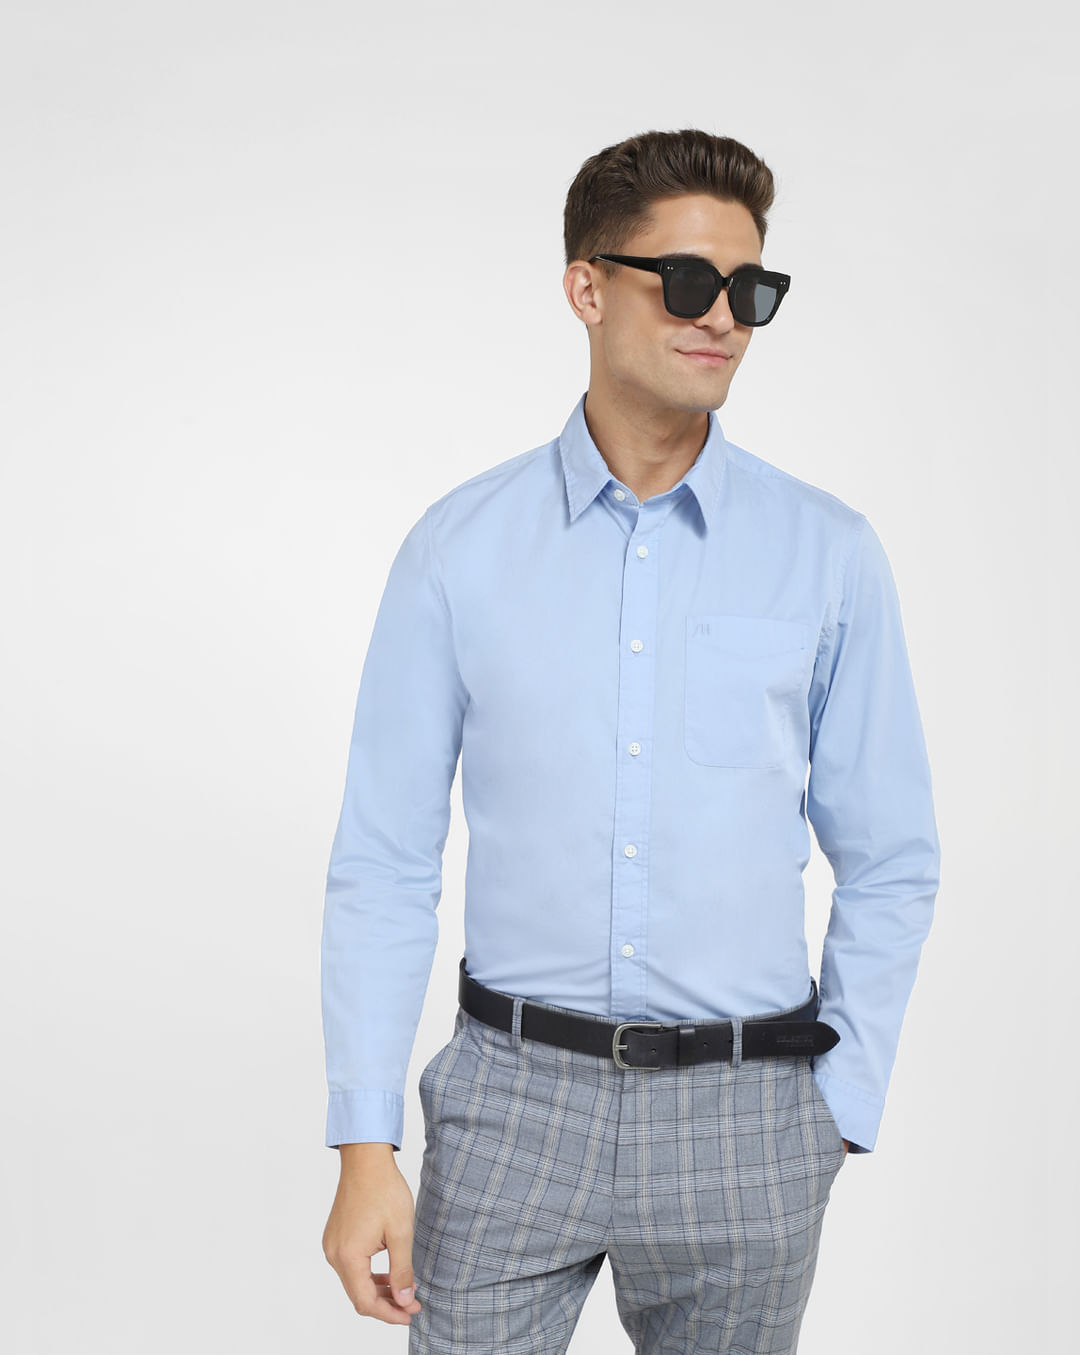 Buy Light Full Men HOMME Shirt at Blue for Online Sleeves SELECTED Formal |228538603